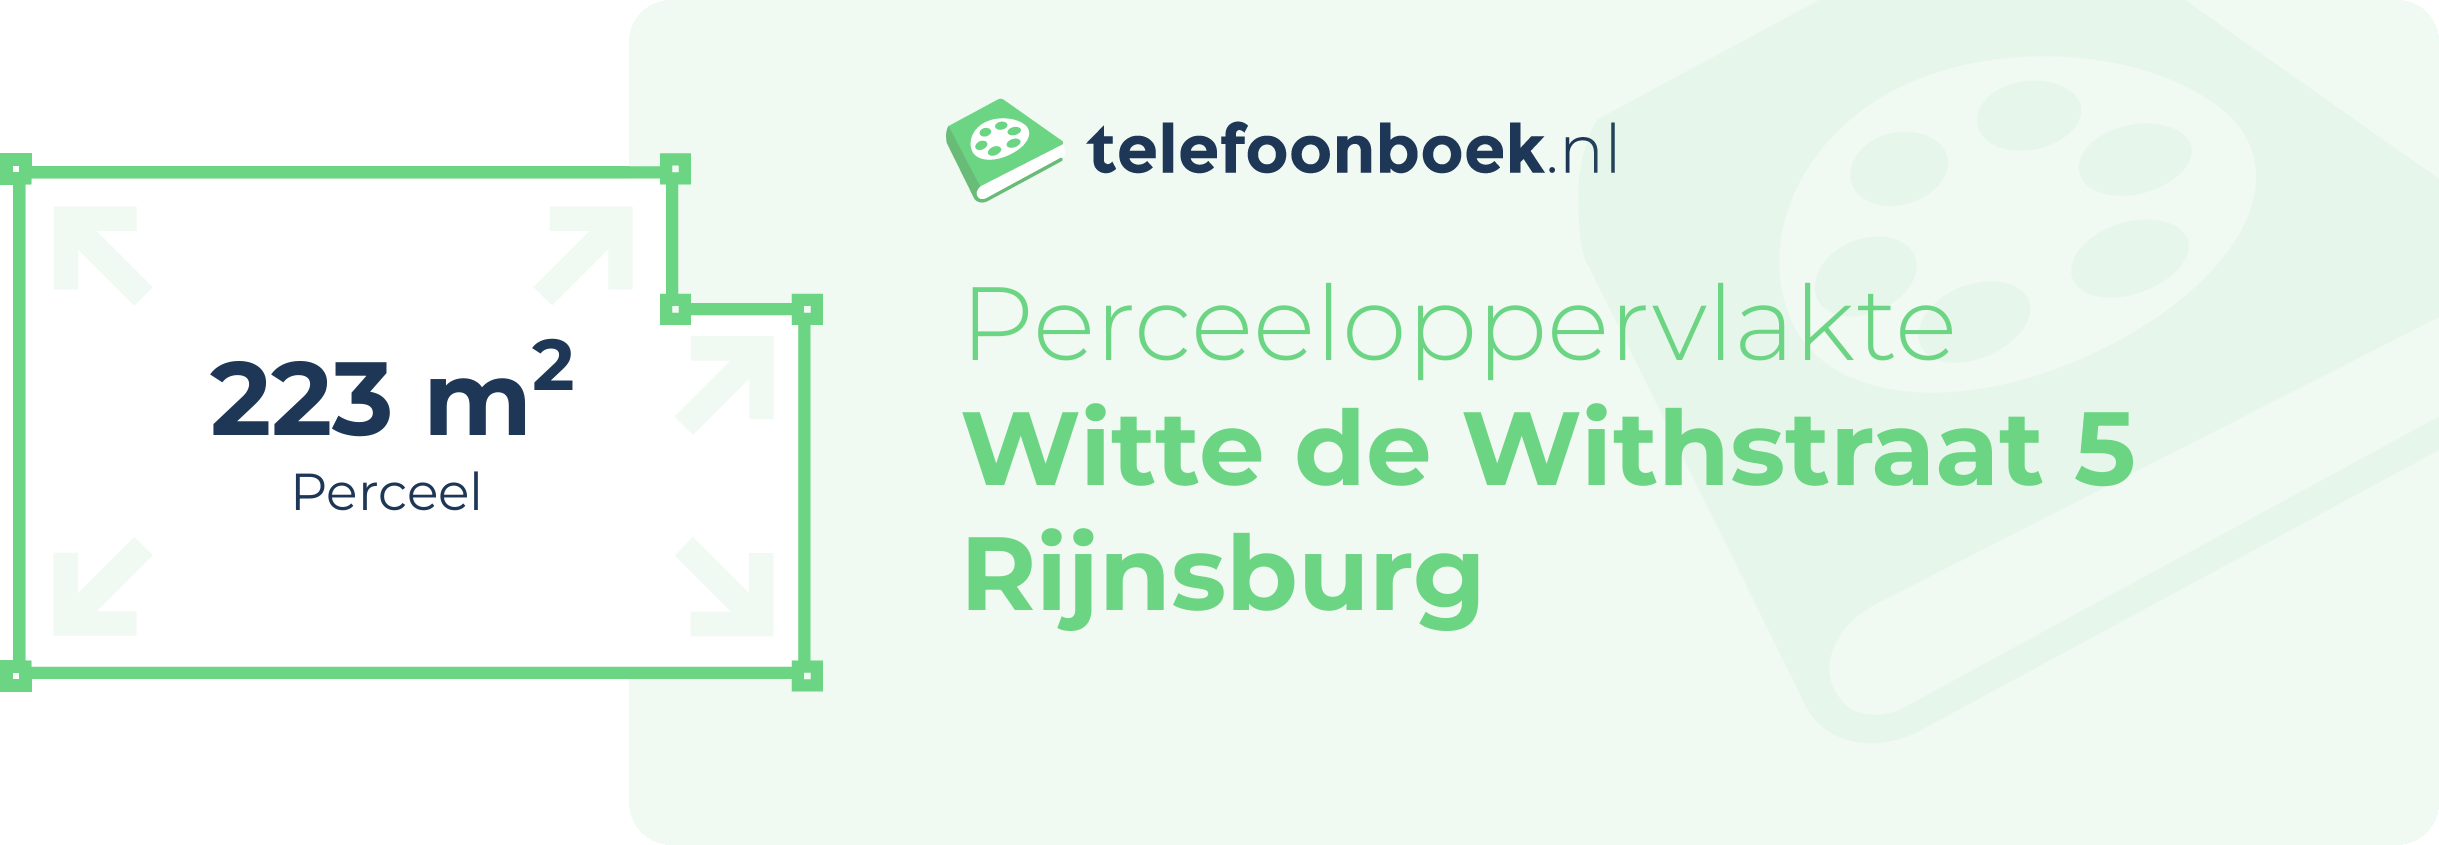 Perceeloppervlakte Witte De Withstraat 5 Rijnsburg